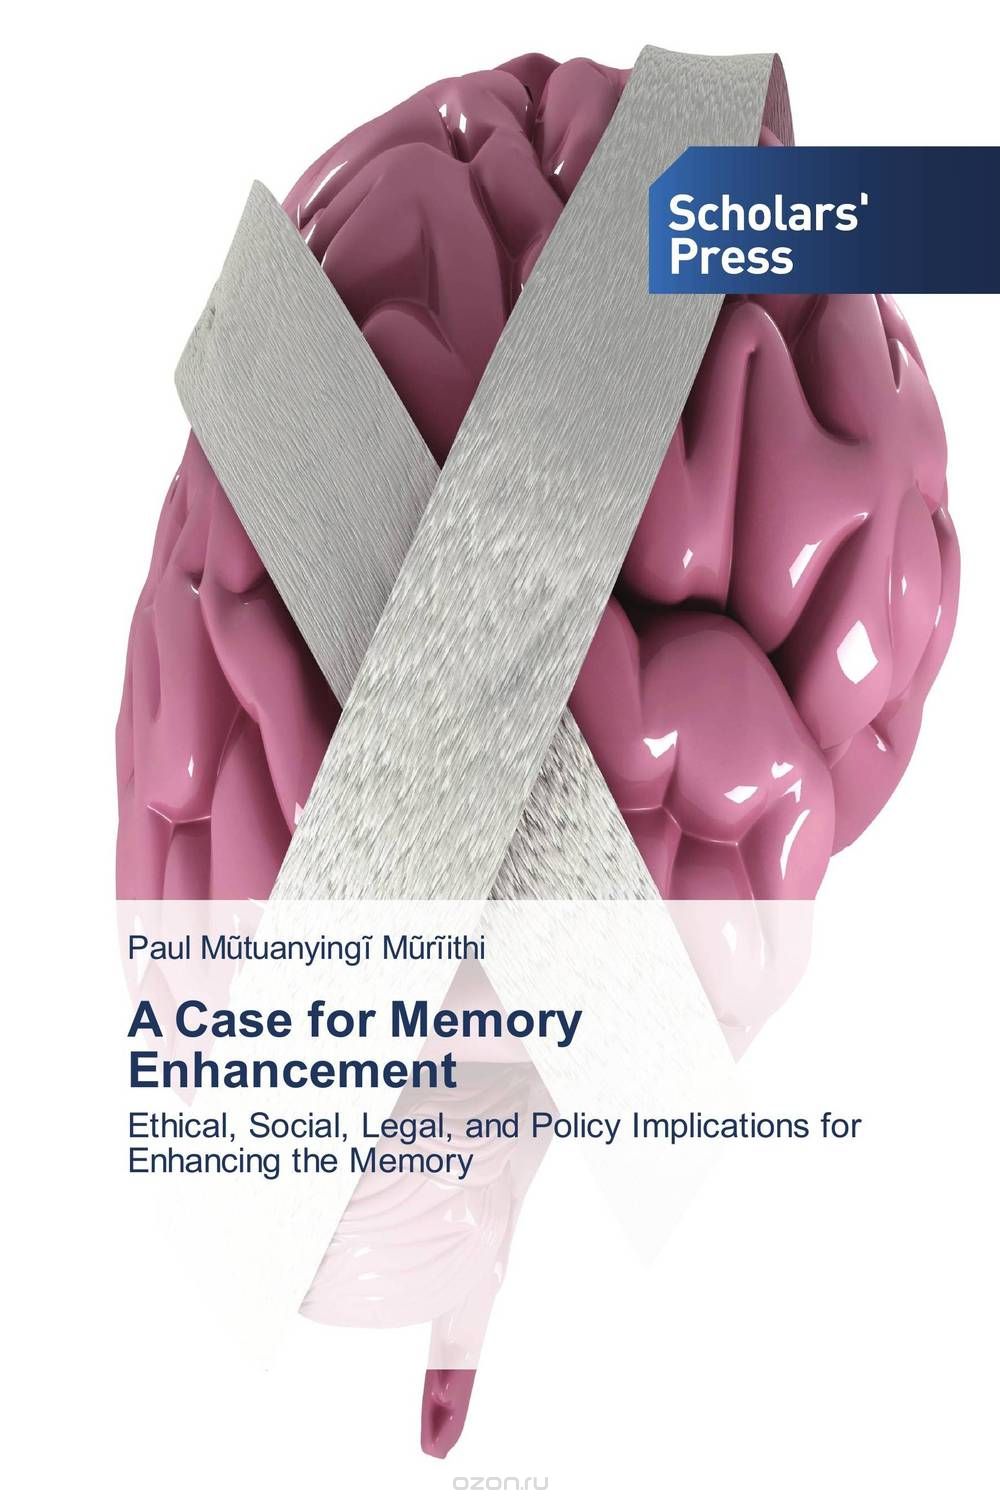 Скачать книгу "A Case for Memory Enhancement"